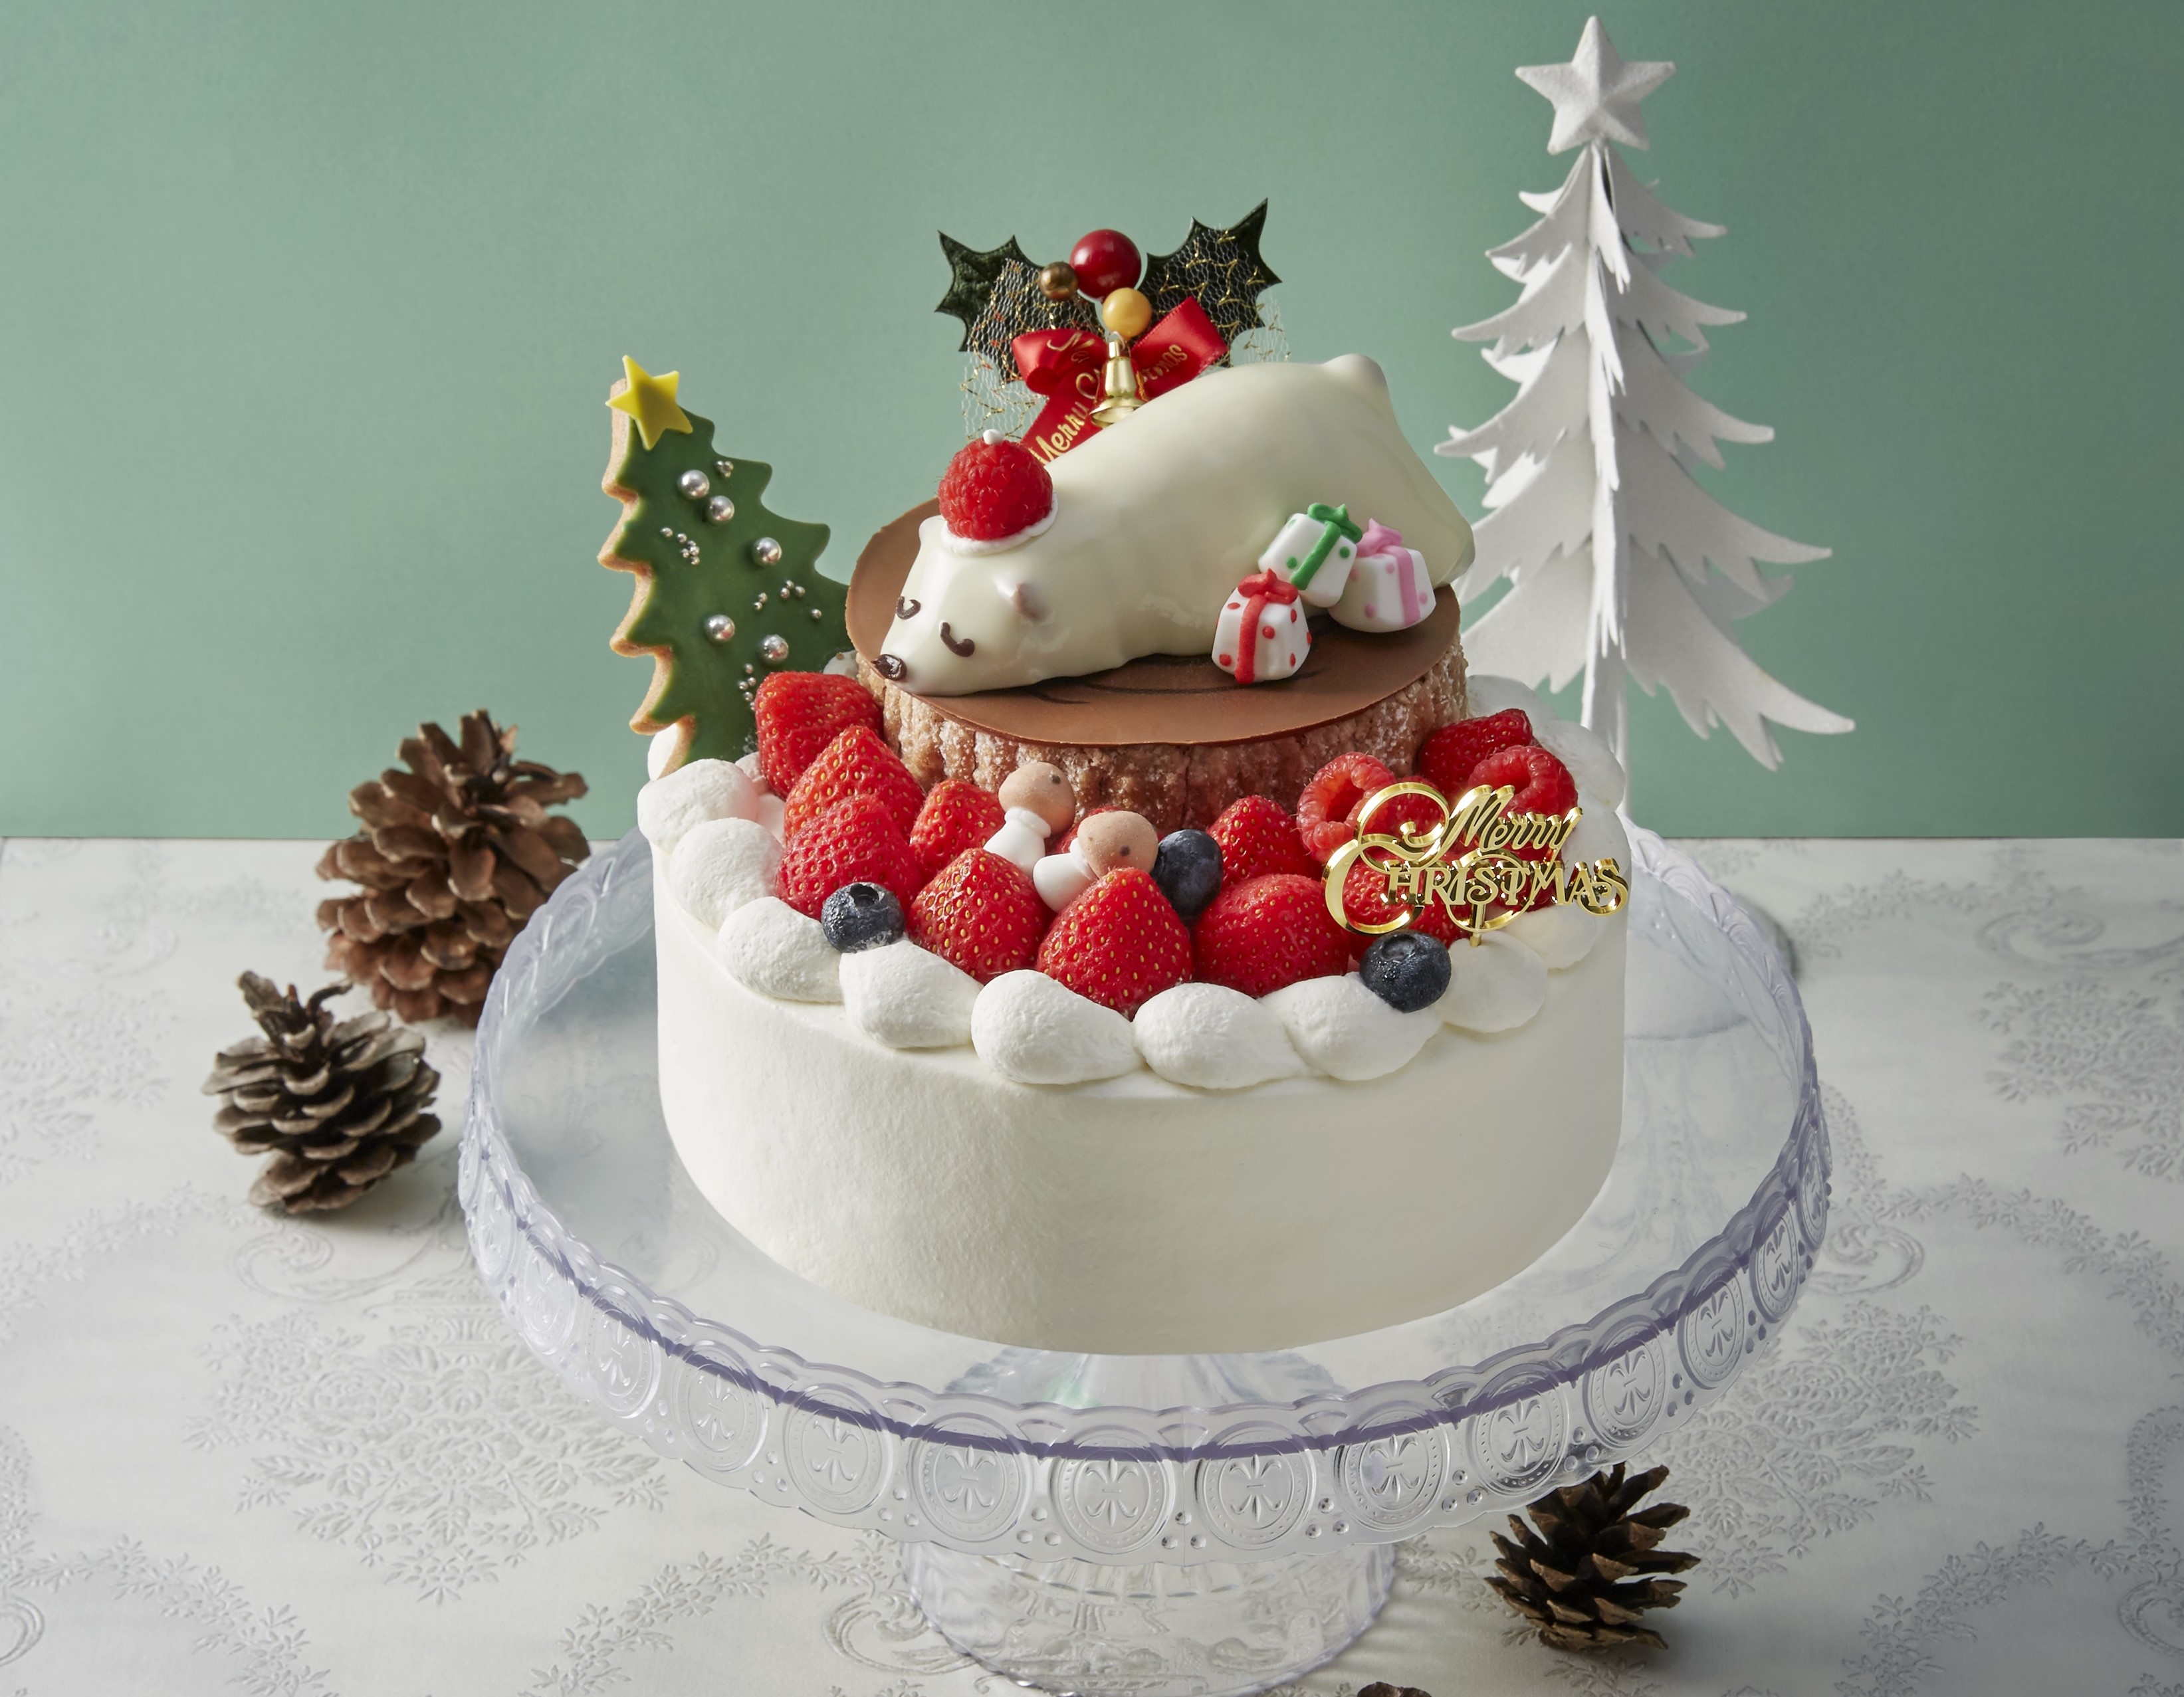 銀座三越がおすすめするクリスマスが楽しくなるケーキ6選 株式会社 三越伊勢丹ホールディングスのプレスリリース